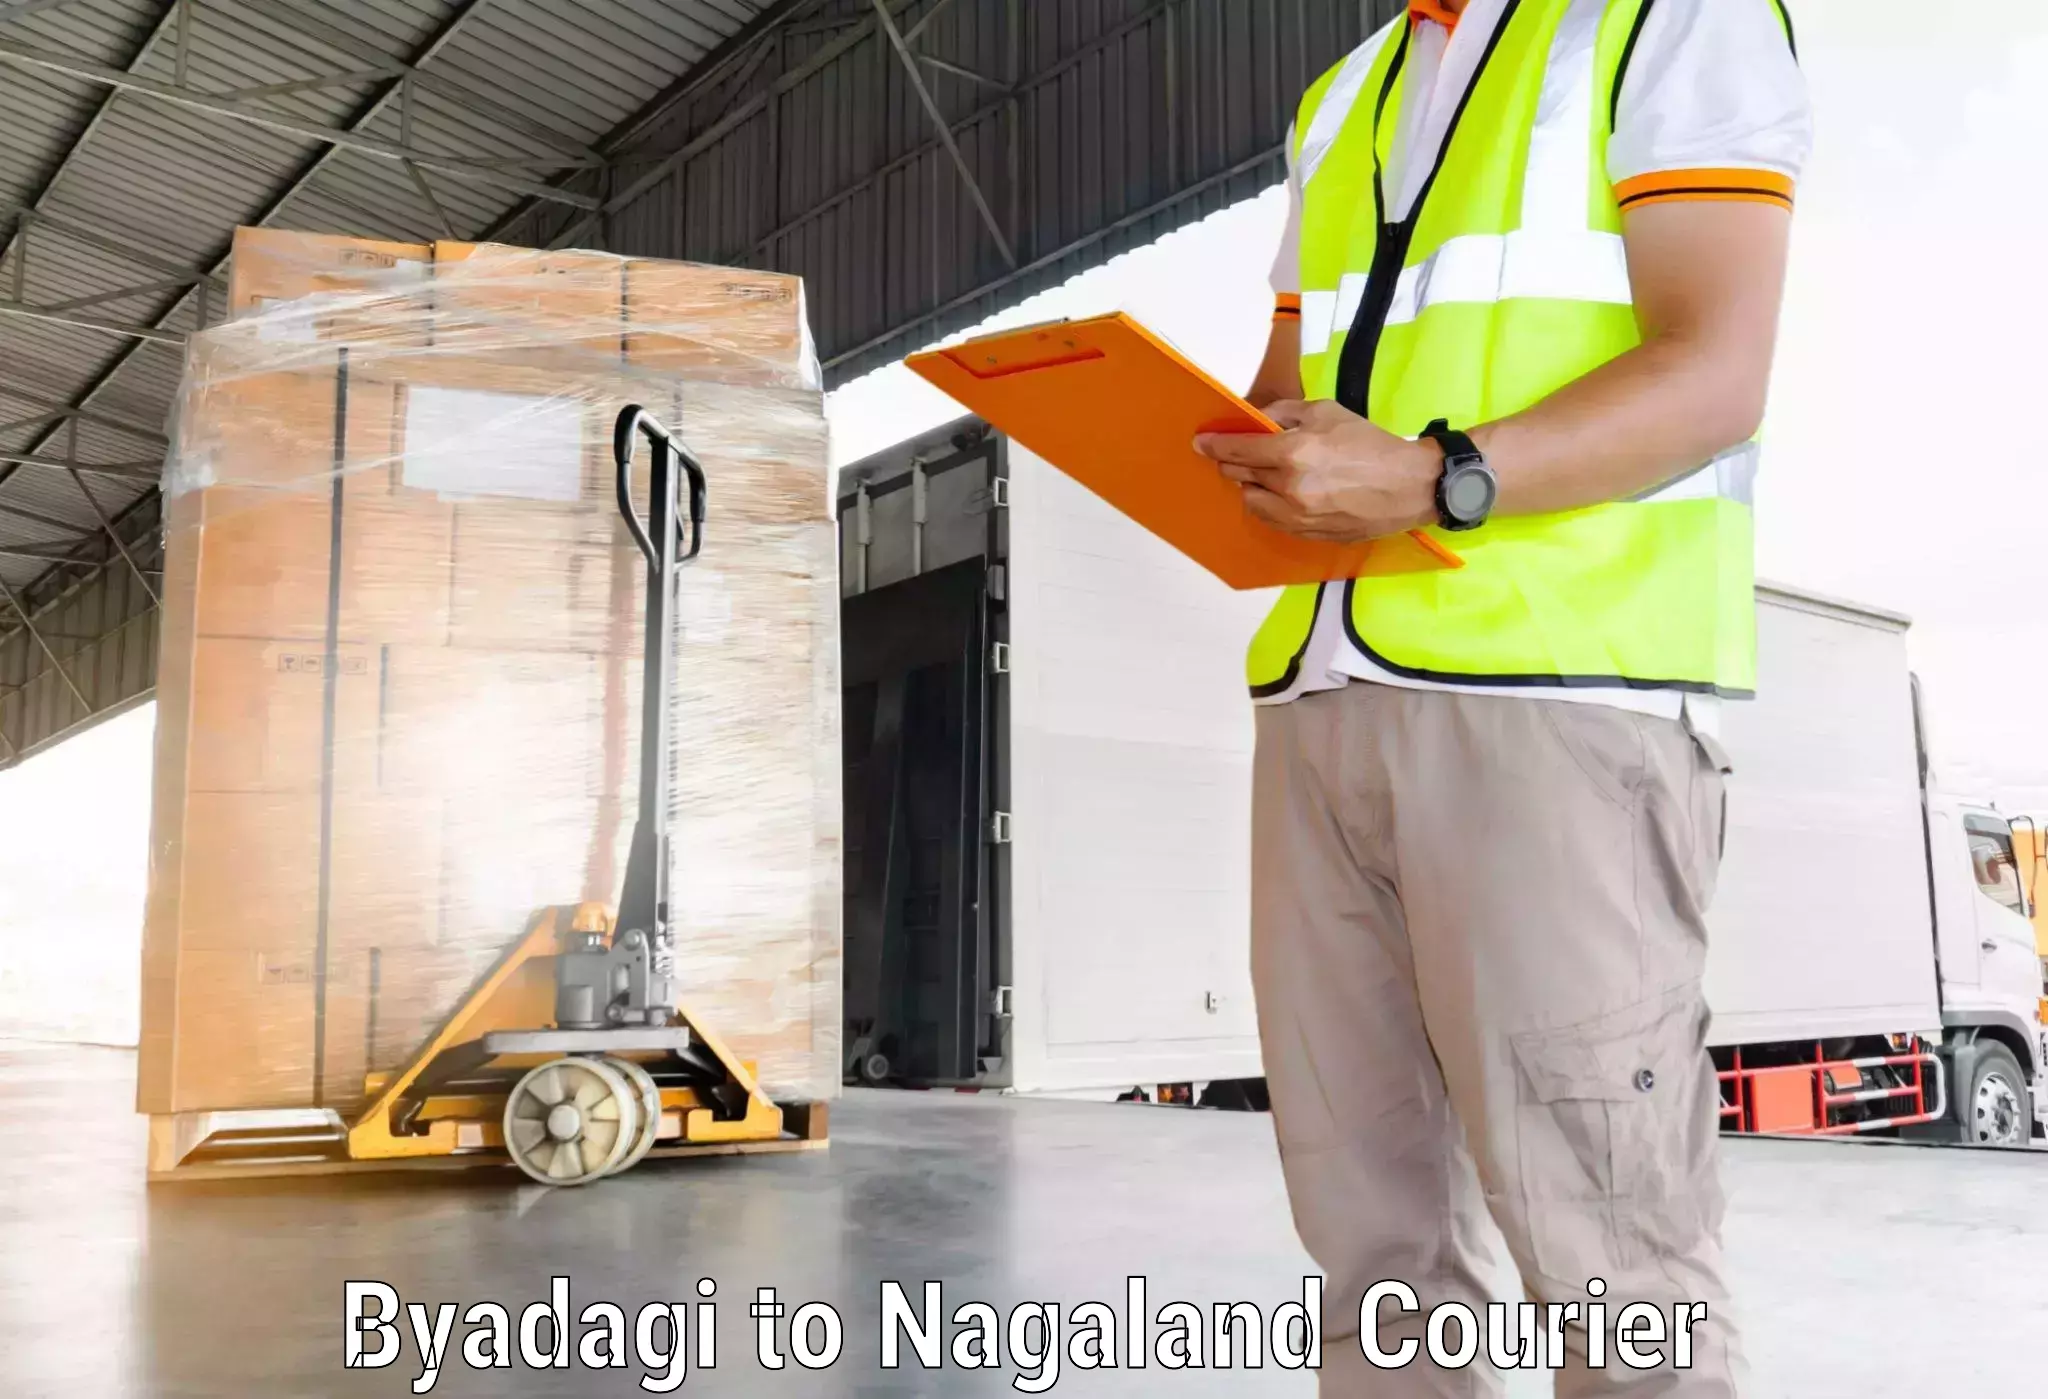 Global logistics network Byadagi to Wokha